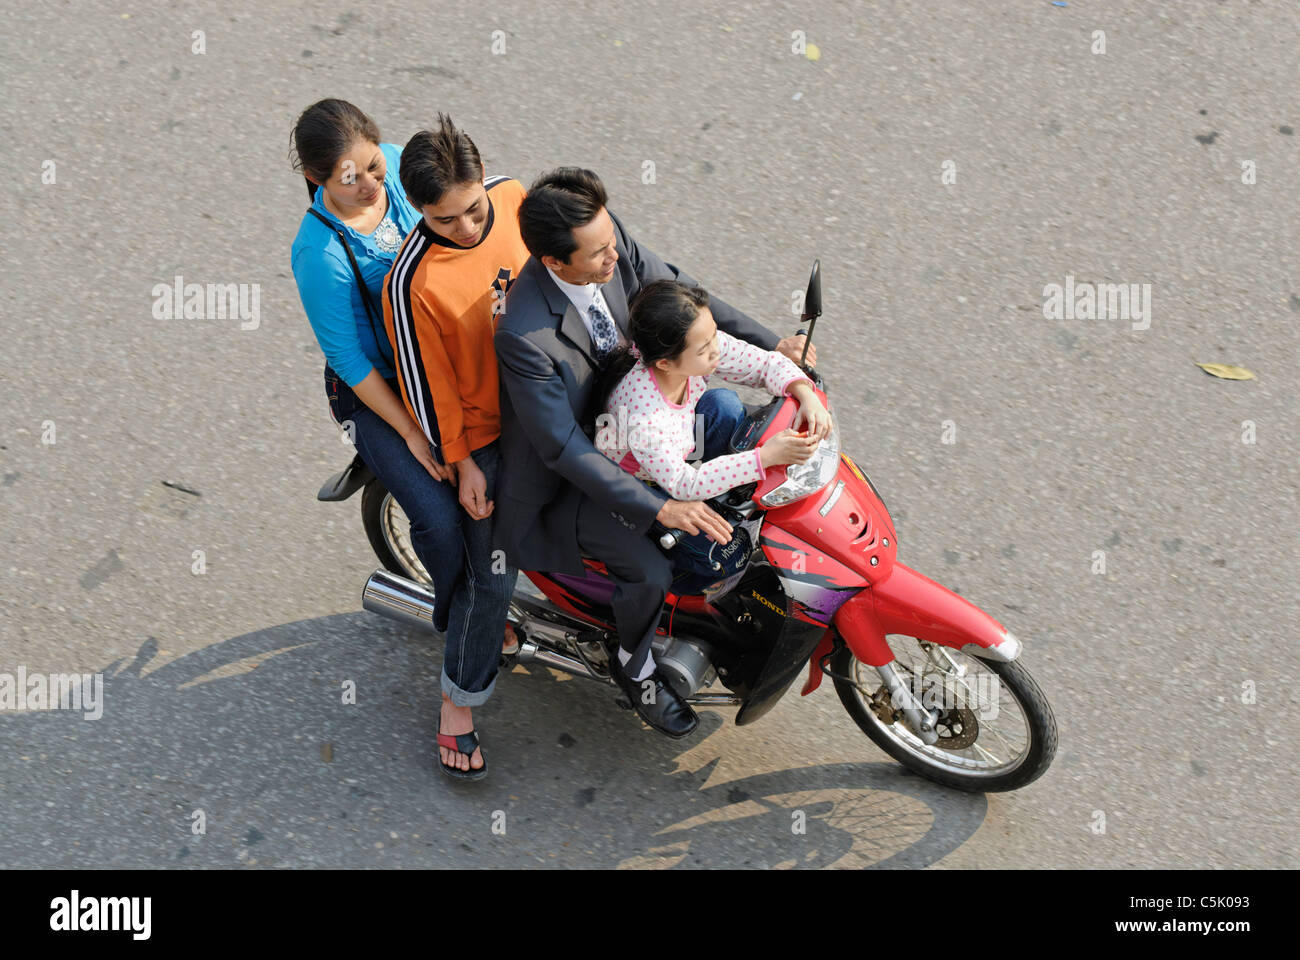 Asia, Vietnam, Hanoi. Hanoi old quarter. Vietnamese family of four riding on a motorbike through Hanoi. Stock Photo